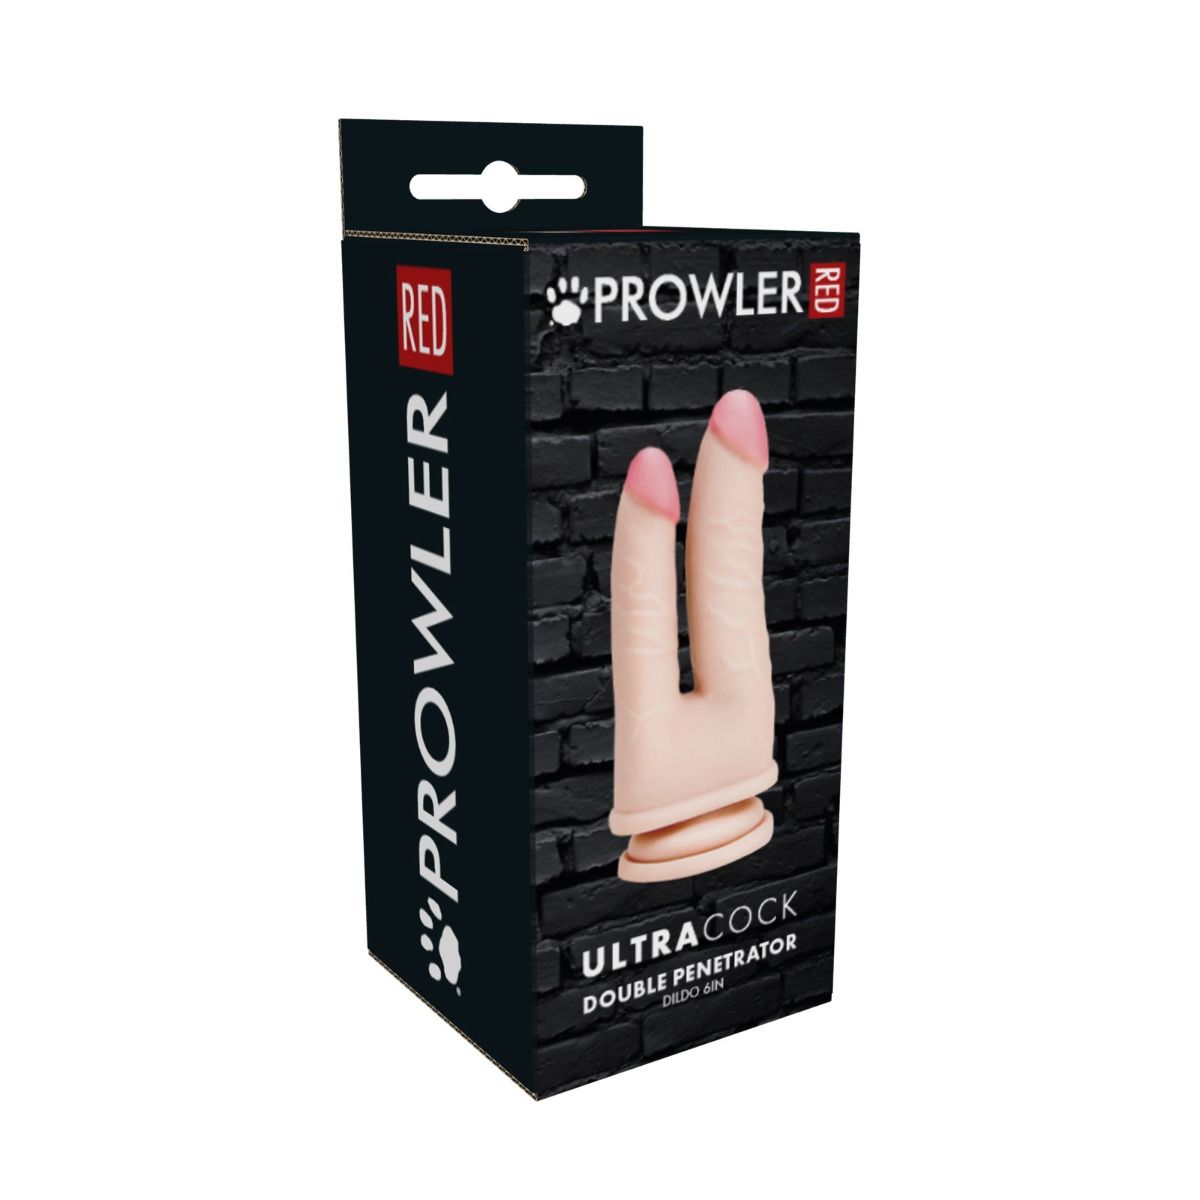 Prowler RED Ultra Cock Double Penetrator Dildo | 6"